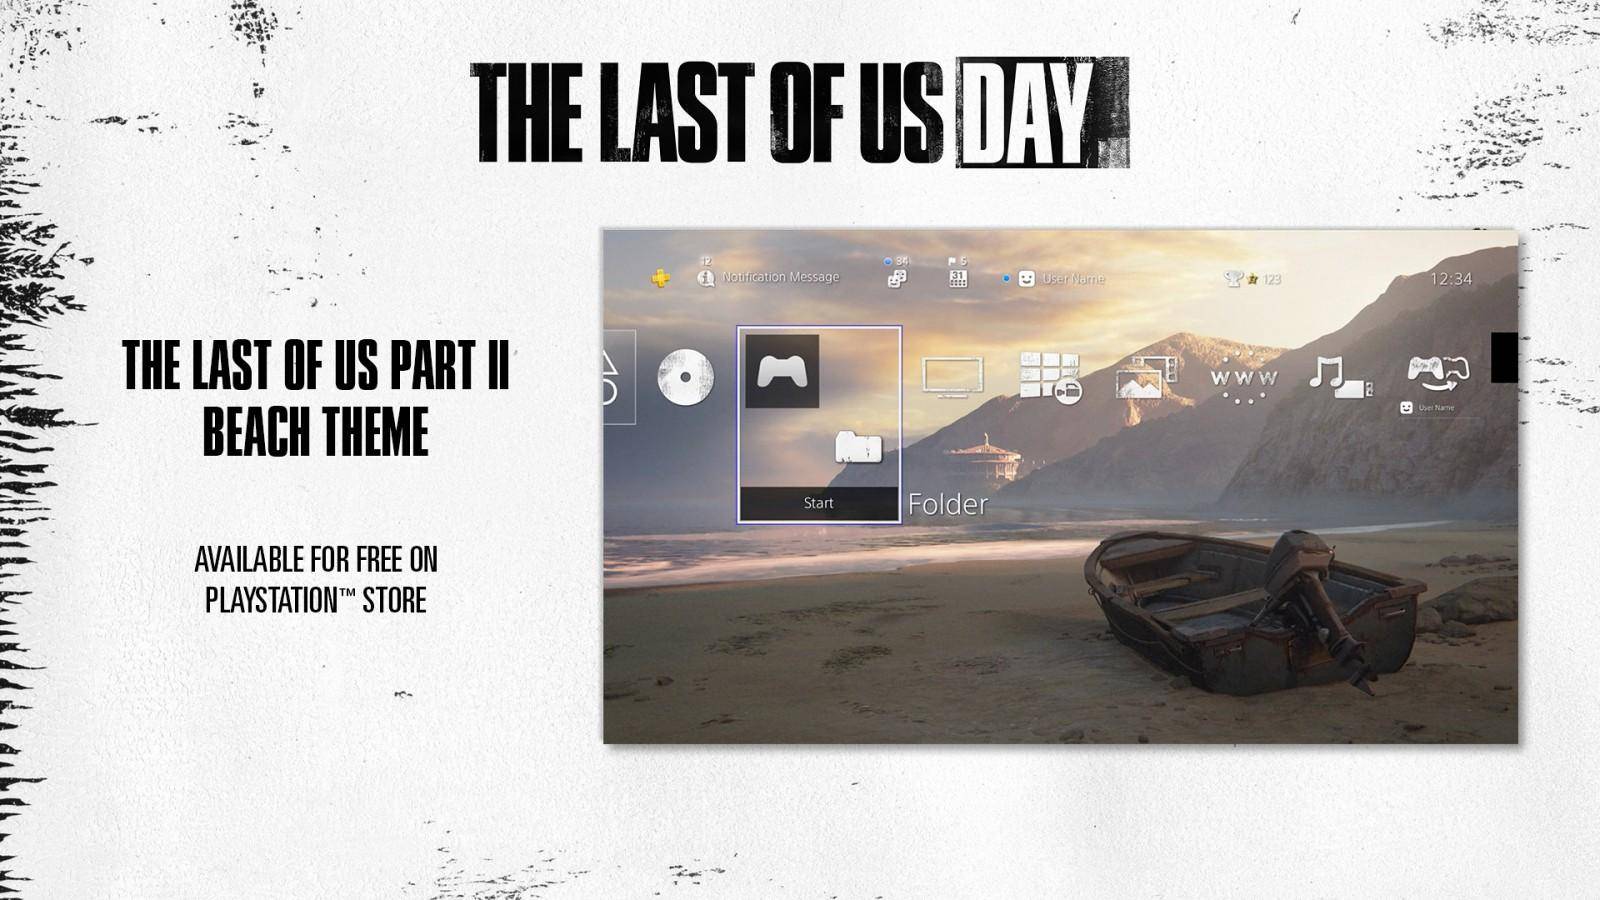 Se anuncia juego de mesa de The Last of Us 2